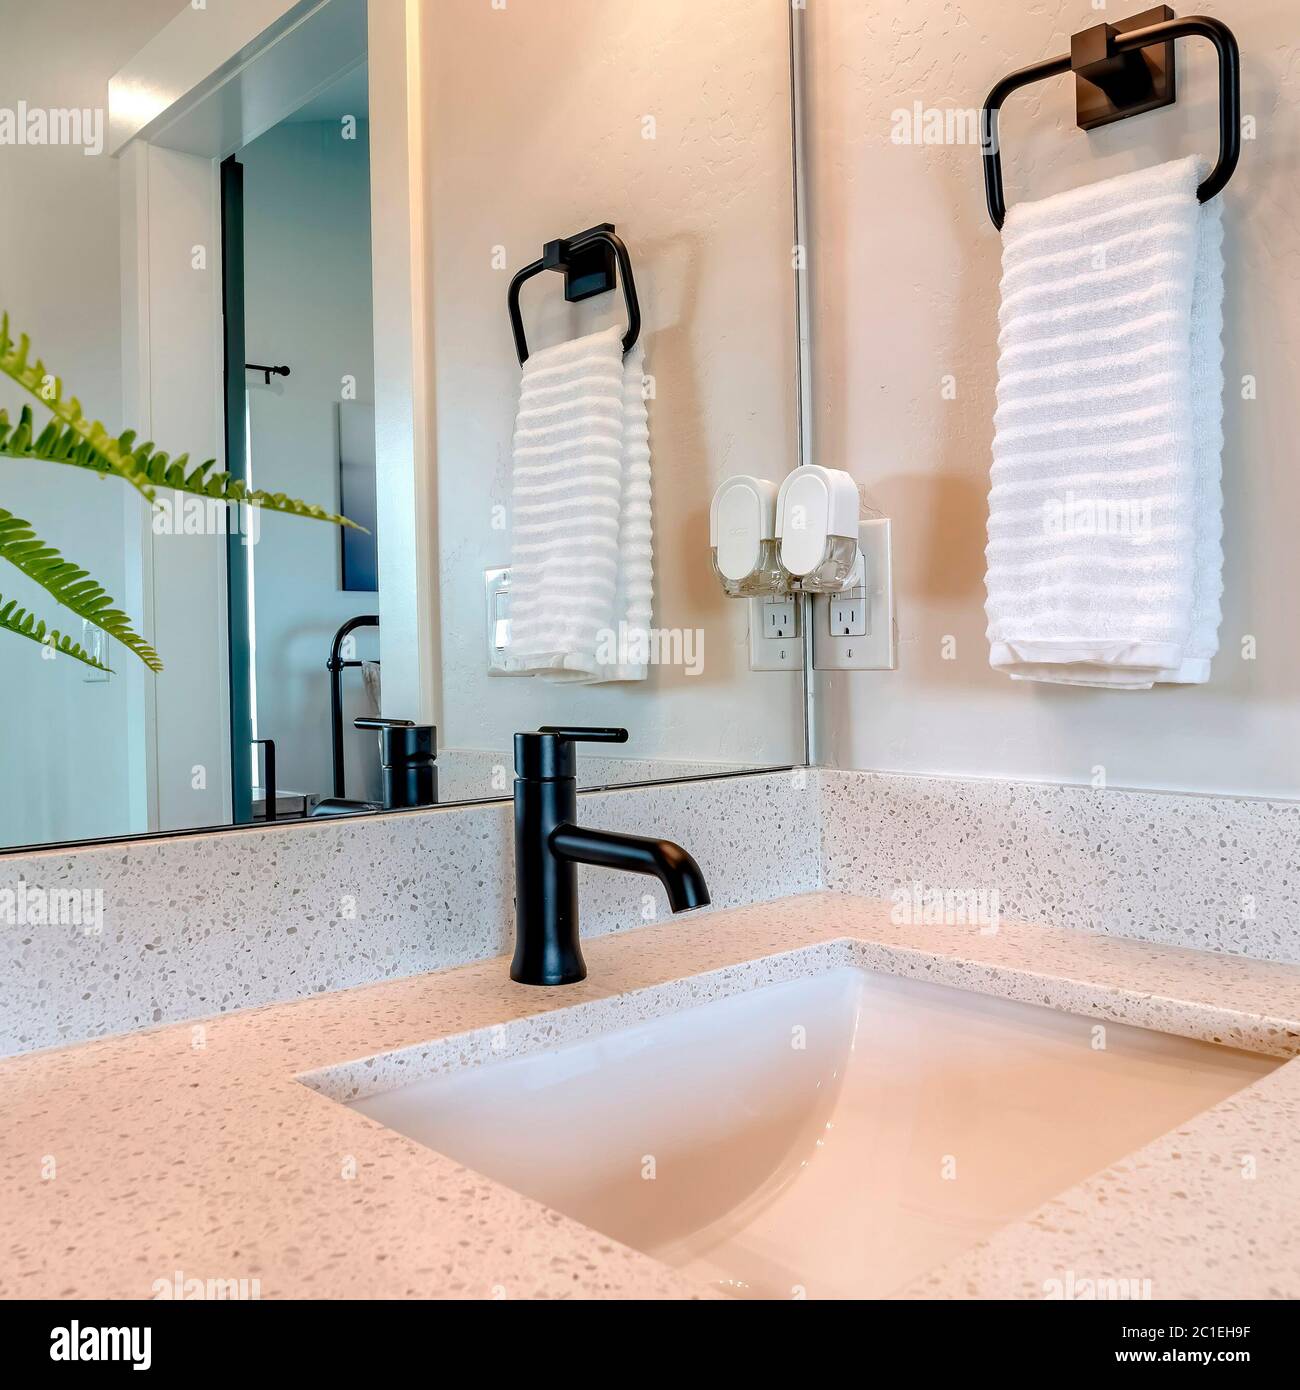 Quadratischer Rahmen Waschbecken und Wasserhahn gegen die Wand mit  hängenden Handtuchhalter und Lichtschalter Stockfotografie - Alamy